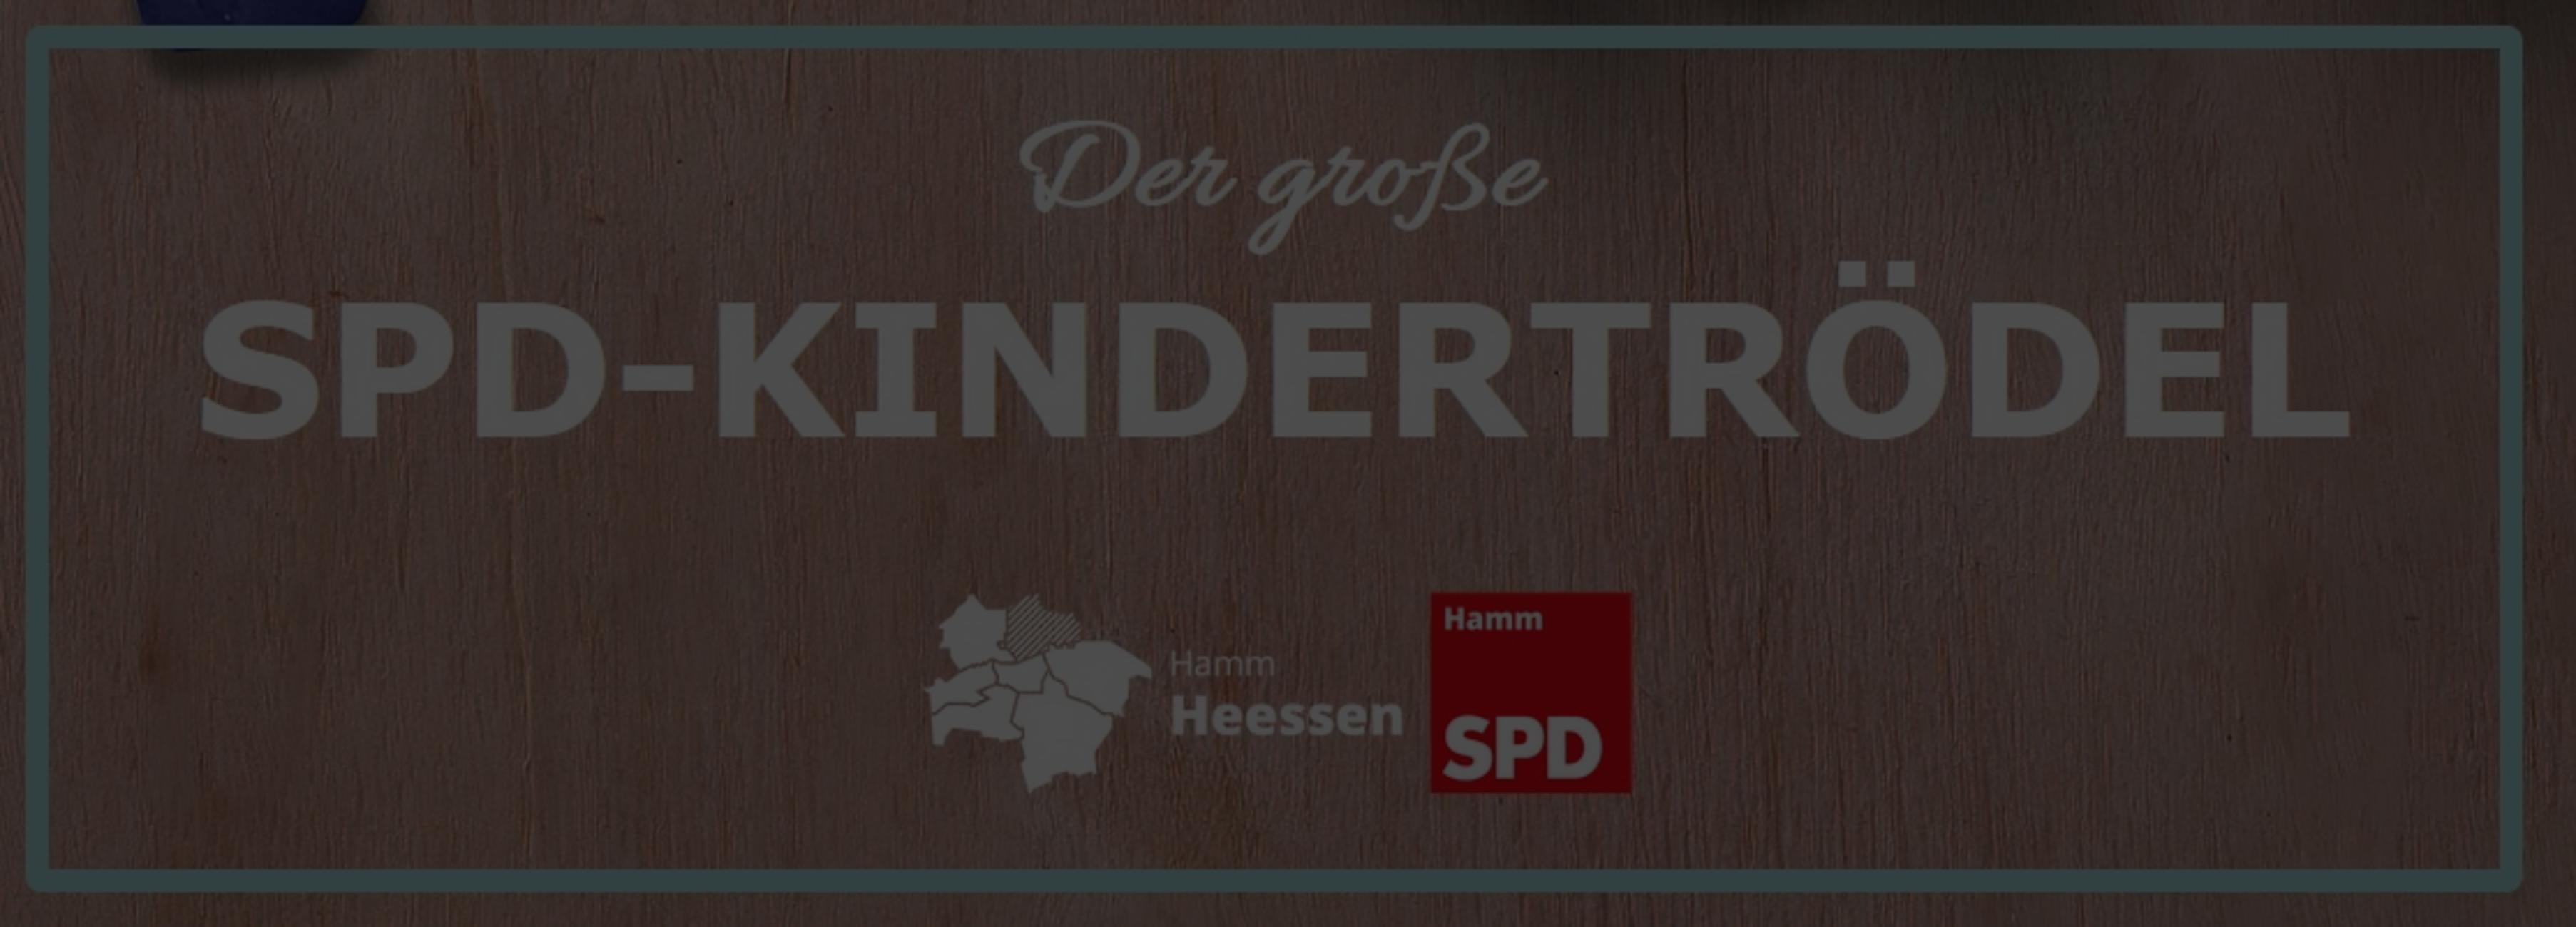  Der große SPD-Kindertrödel